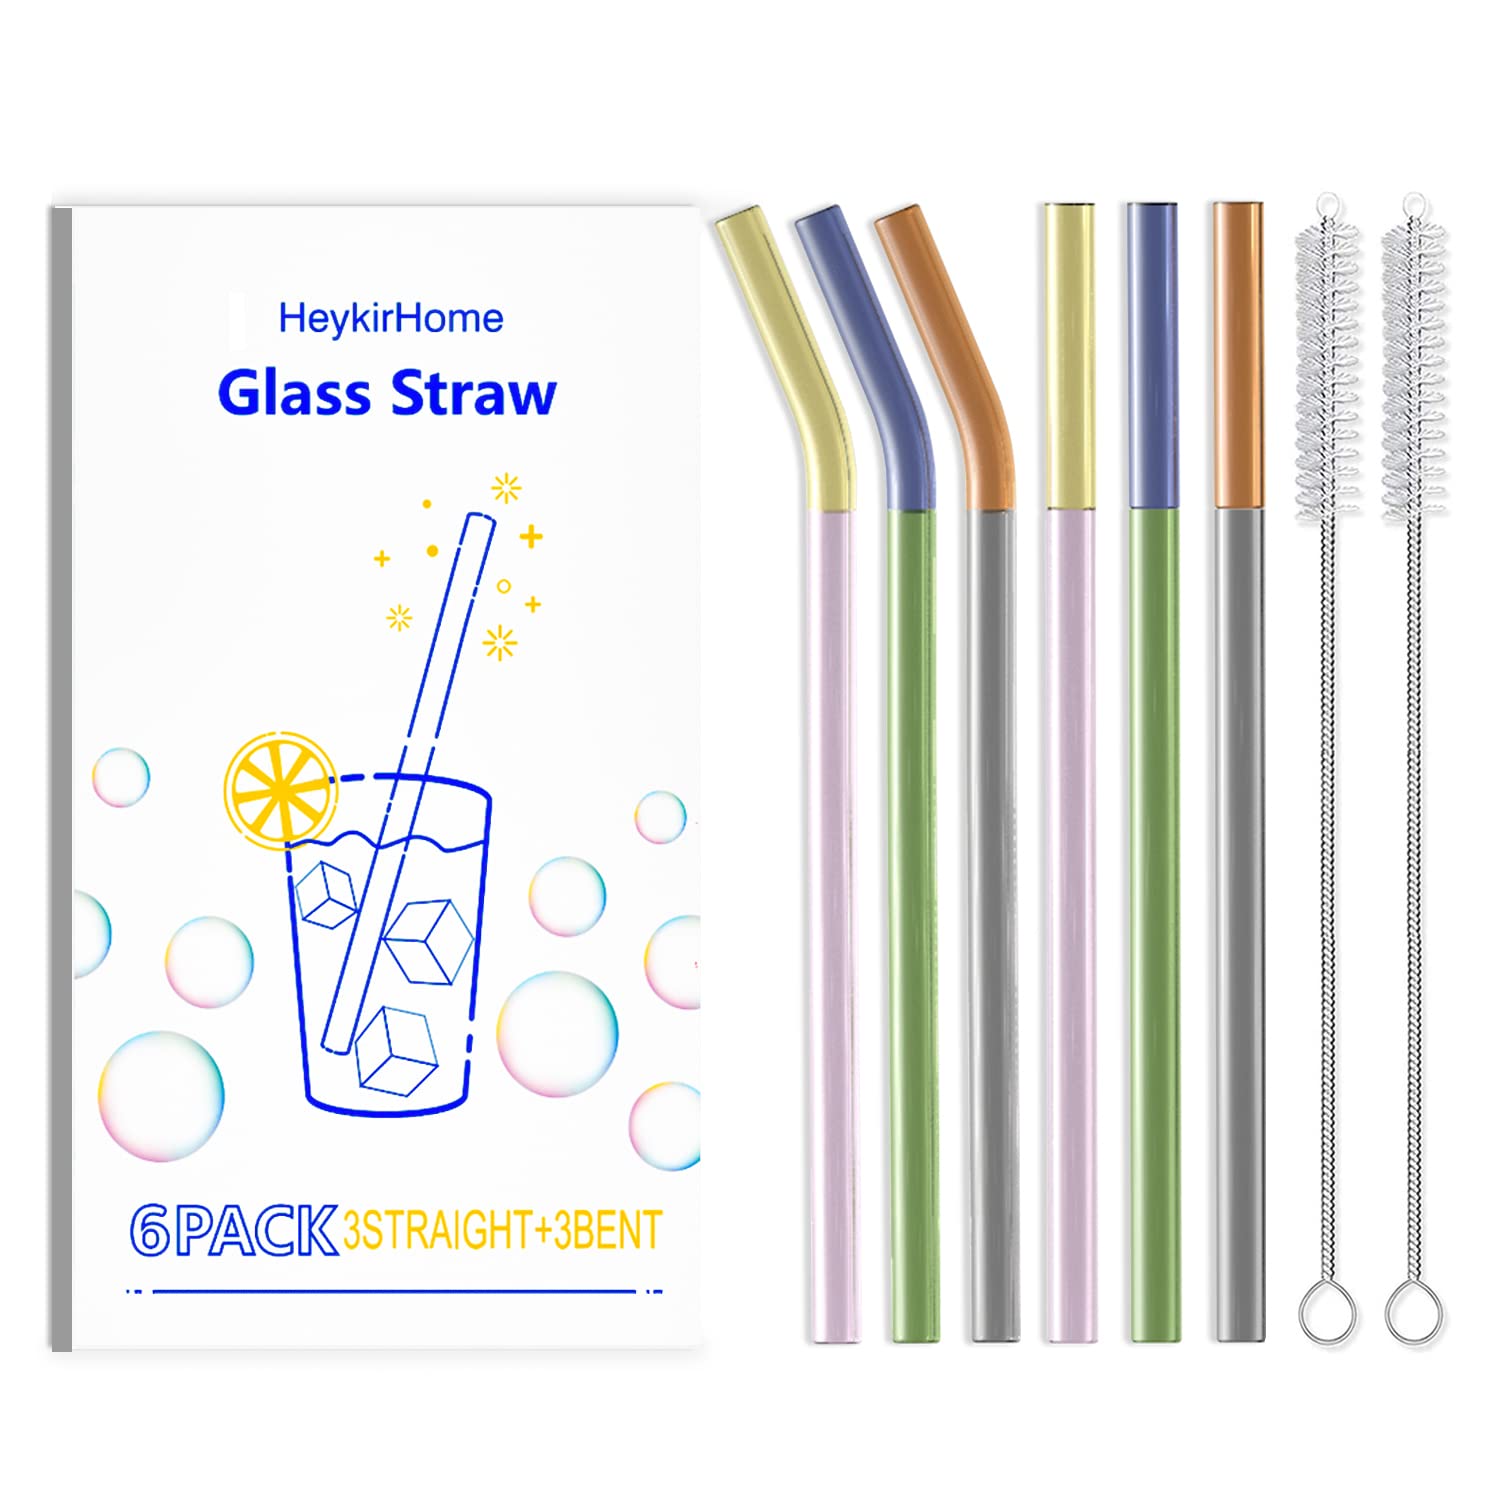 Glass Straw Glass Straws Straight Glass Straw Colorful Glass Straw